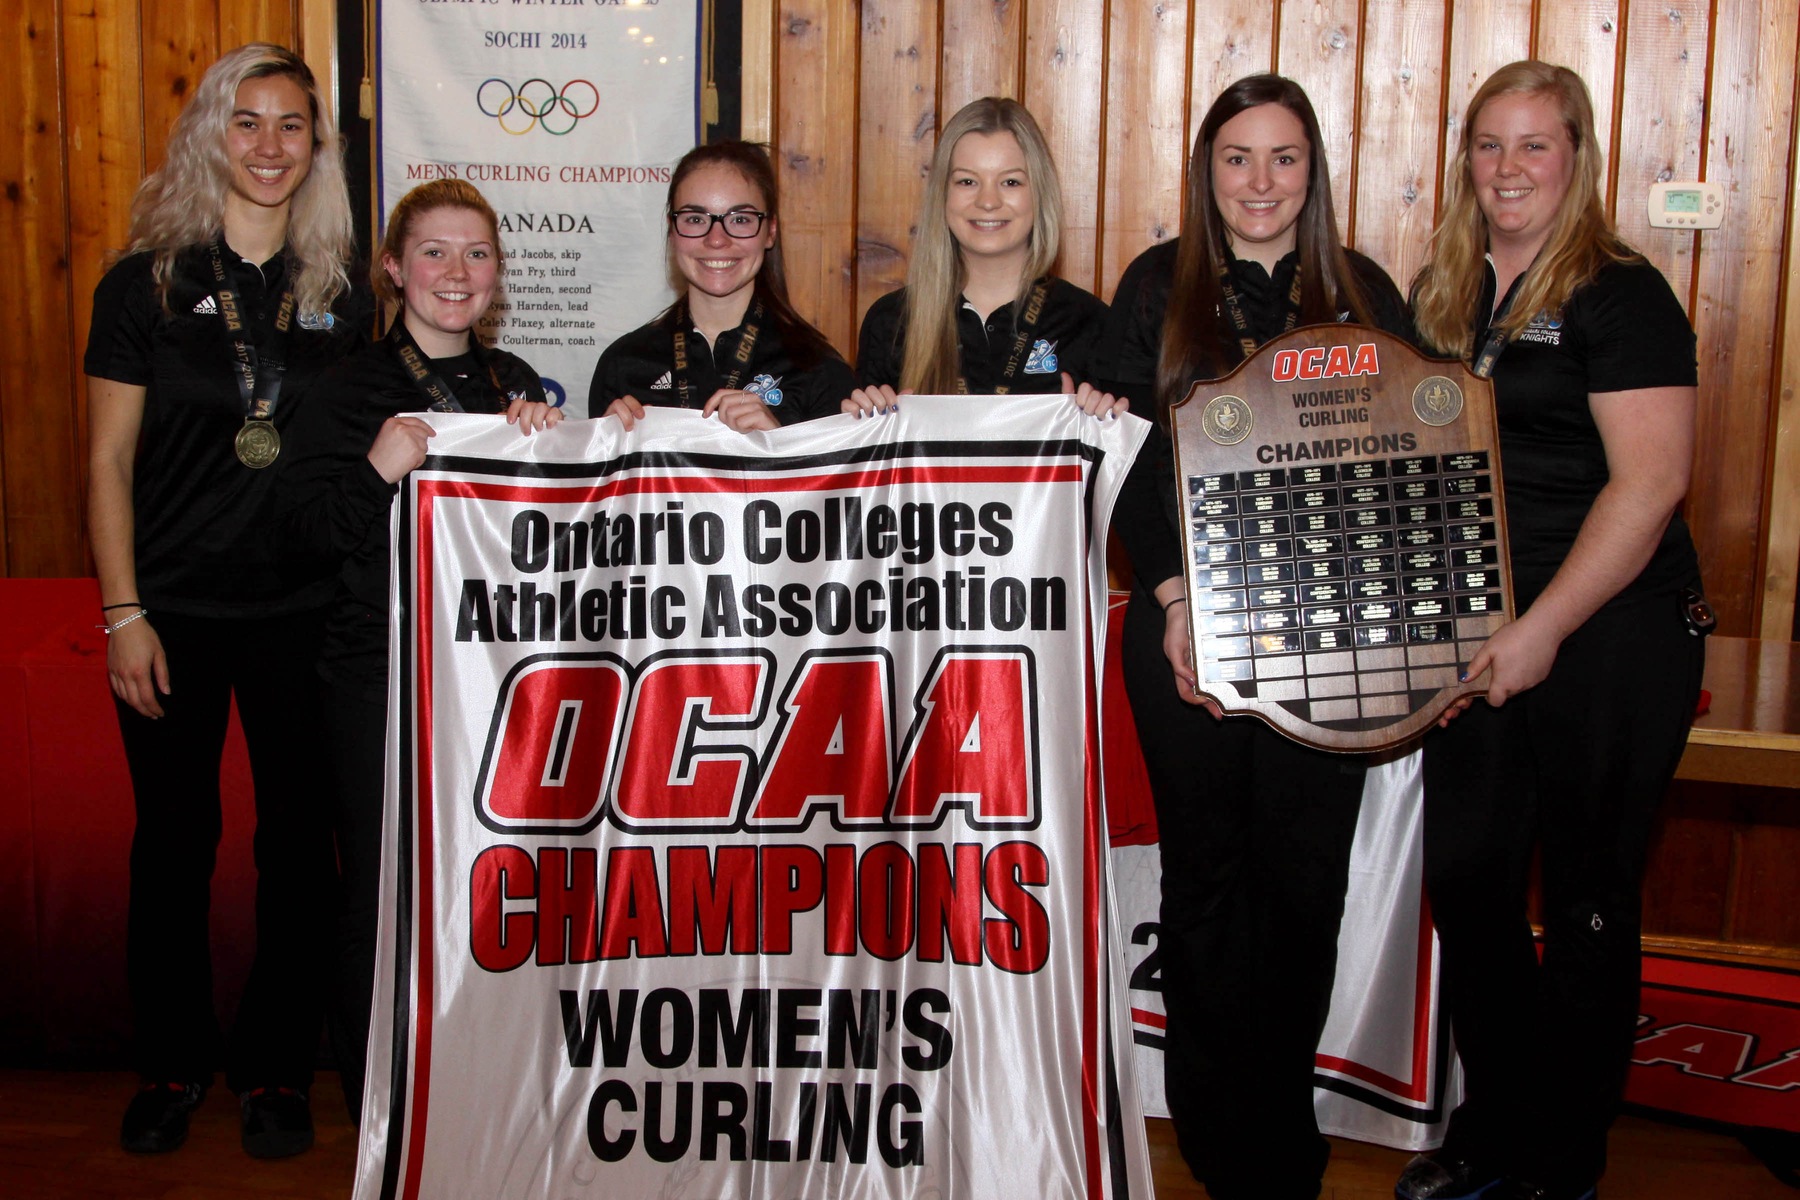 RECAP - Niagara Knights Women's Curling win OCAA Championship